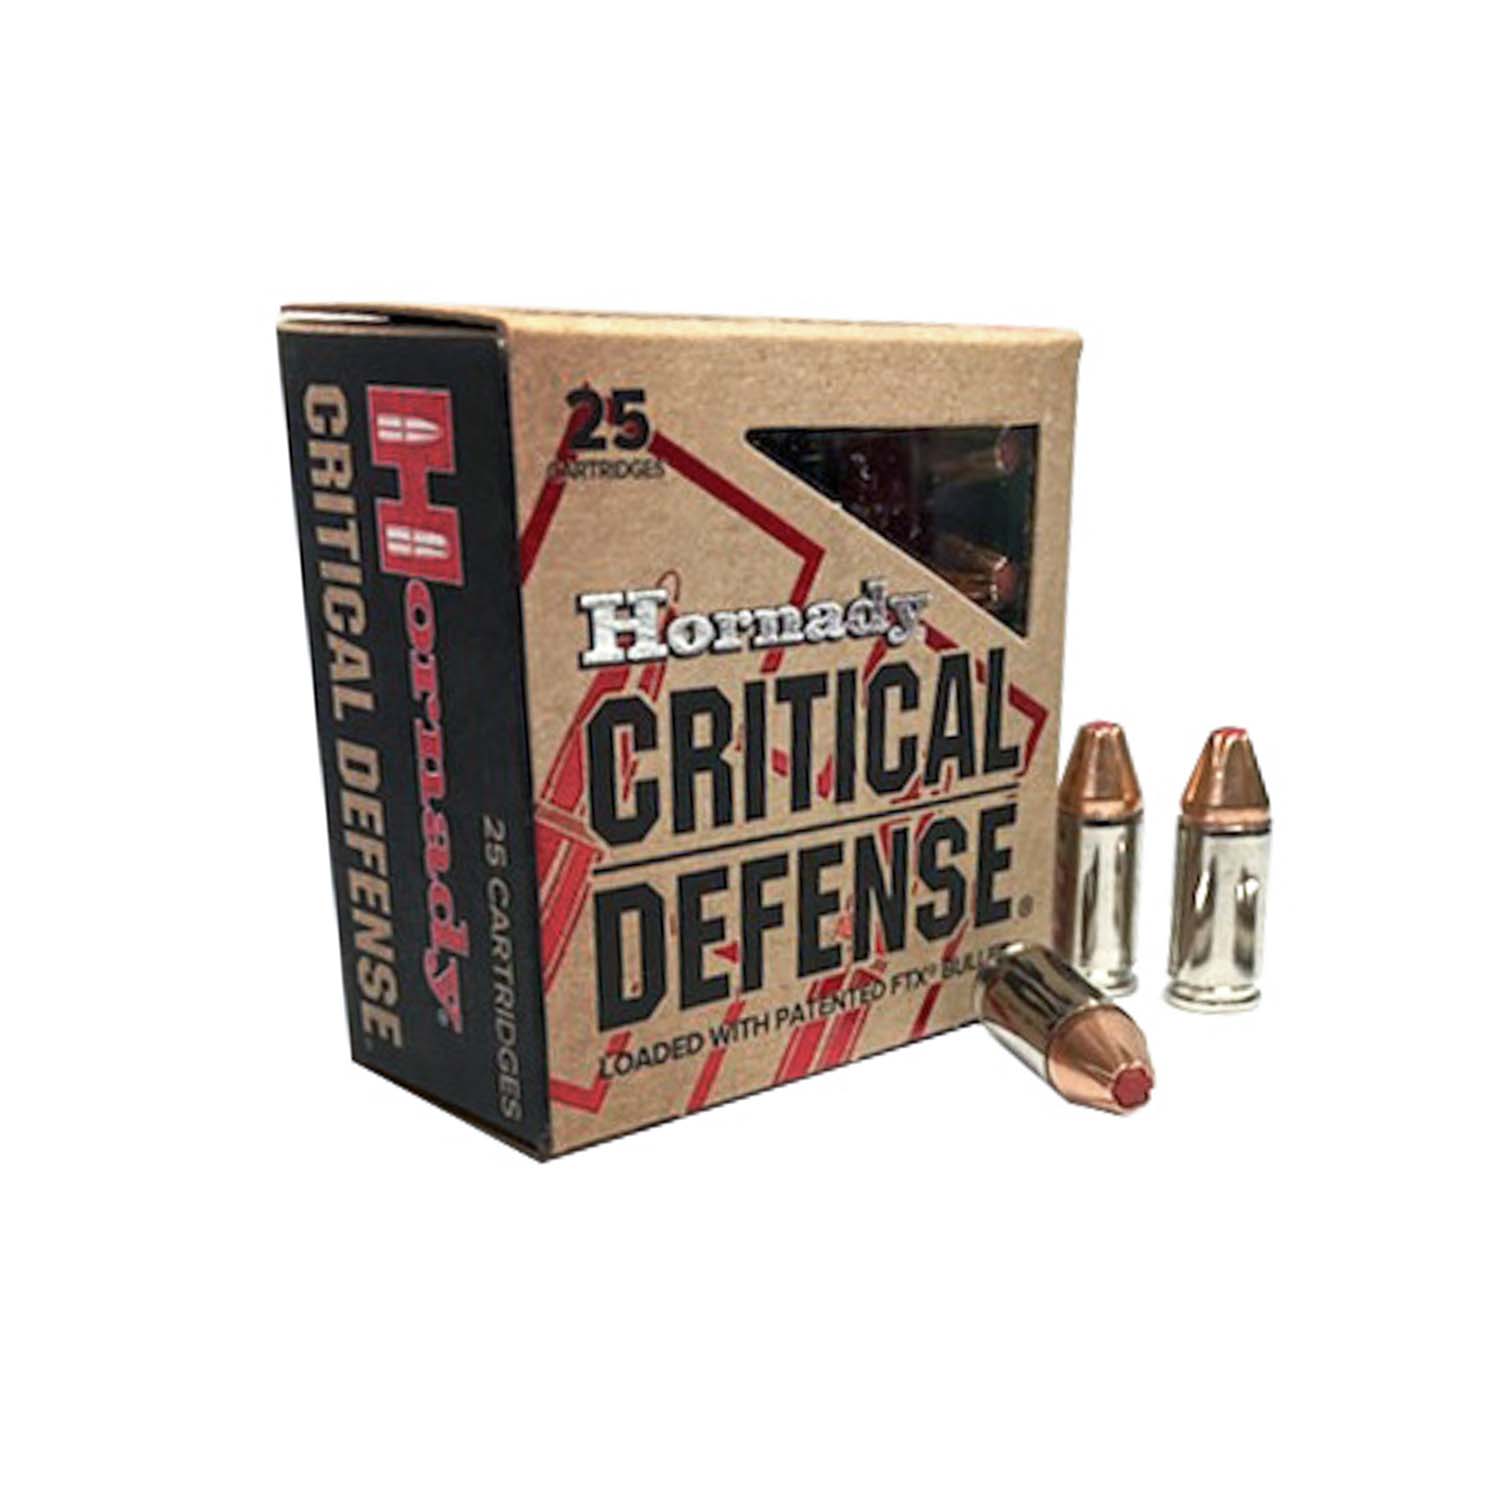 hornady critical defense 9mm 100gr ftx